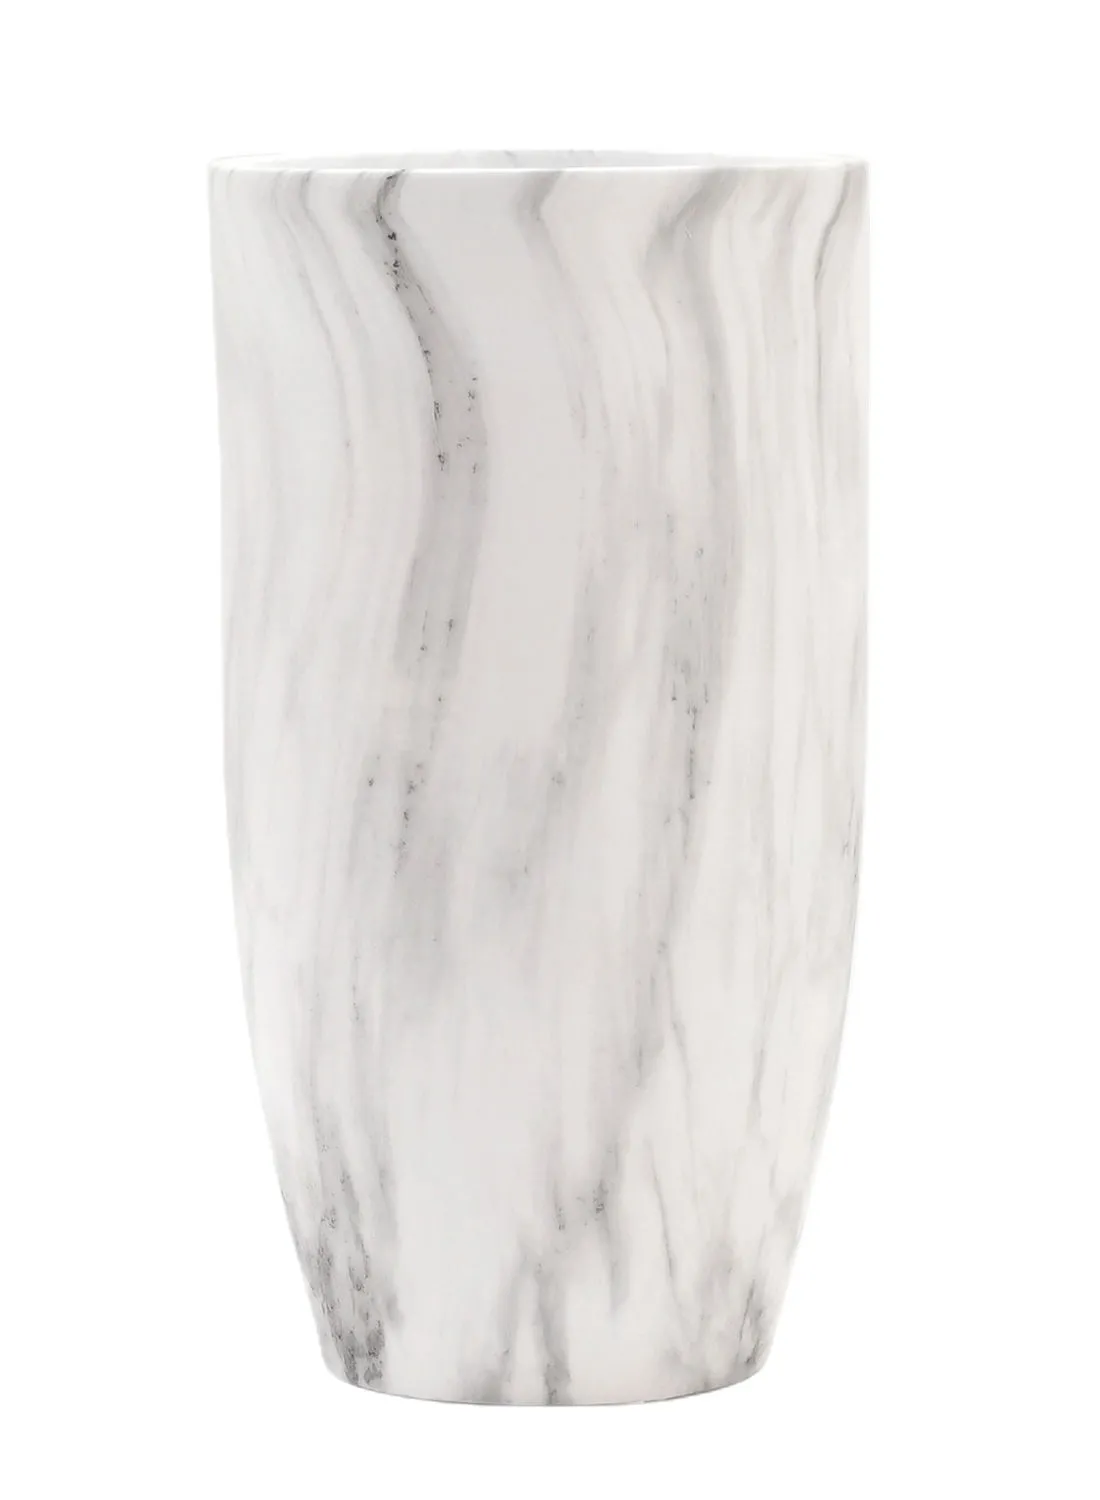 إيب آند فلو تصميم رخام طبيعي مزهرية سيراميك فريدة من نوعها مواد ذات جودة فاخرة لمنزل أنيق مثالي N13-027 أبيض 24 × 45 سم